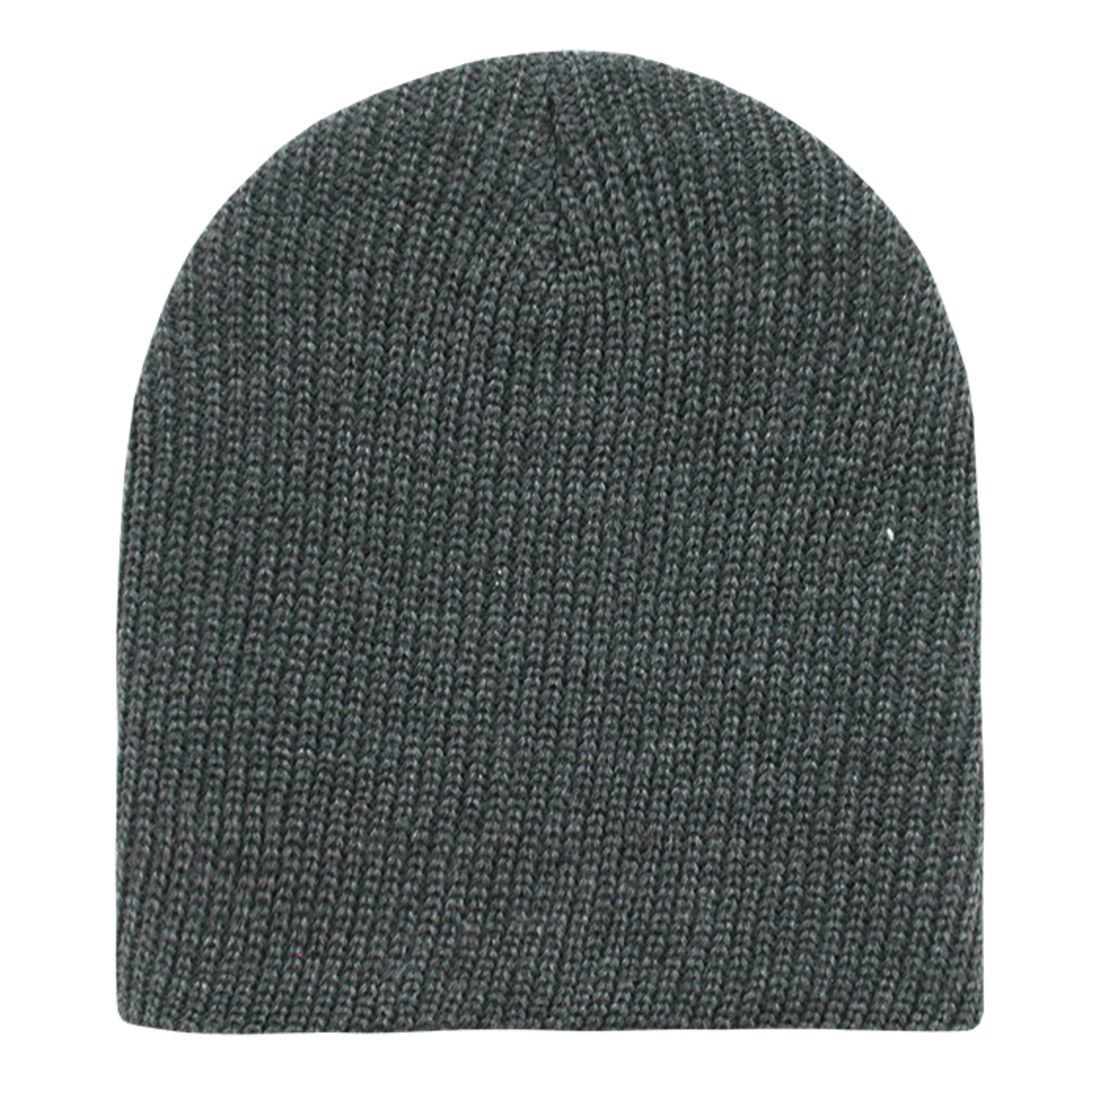 Decky 608 GI Watch Cuffless Knit Beanie Hats Soft Ski Caps Winter Warm